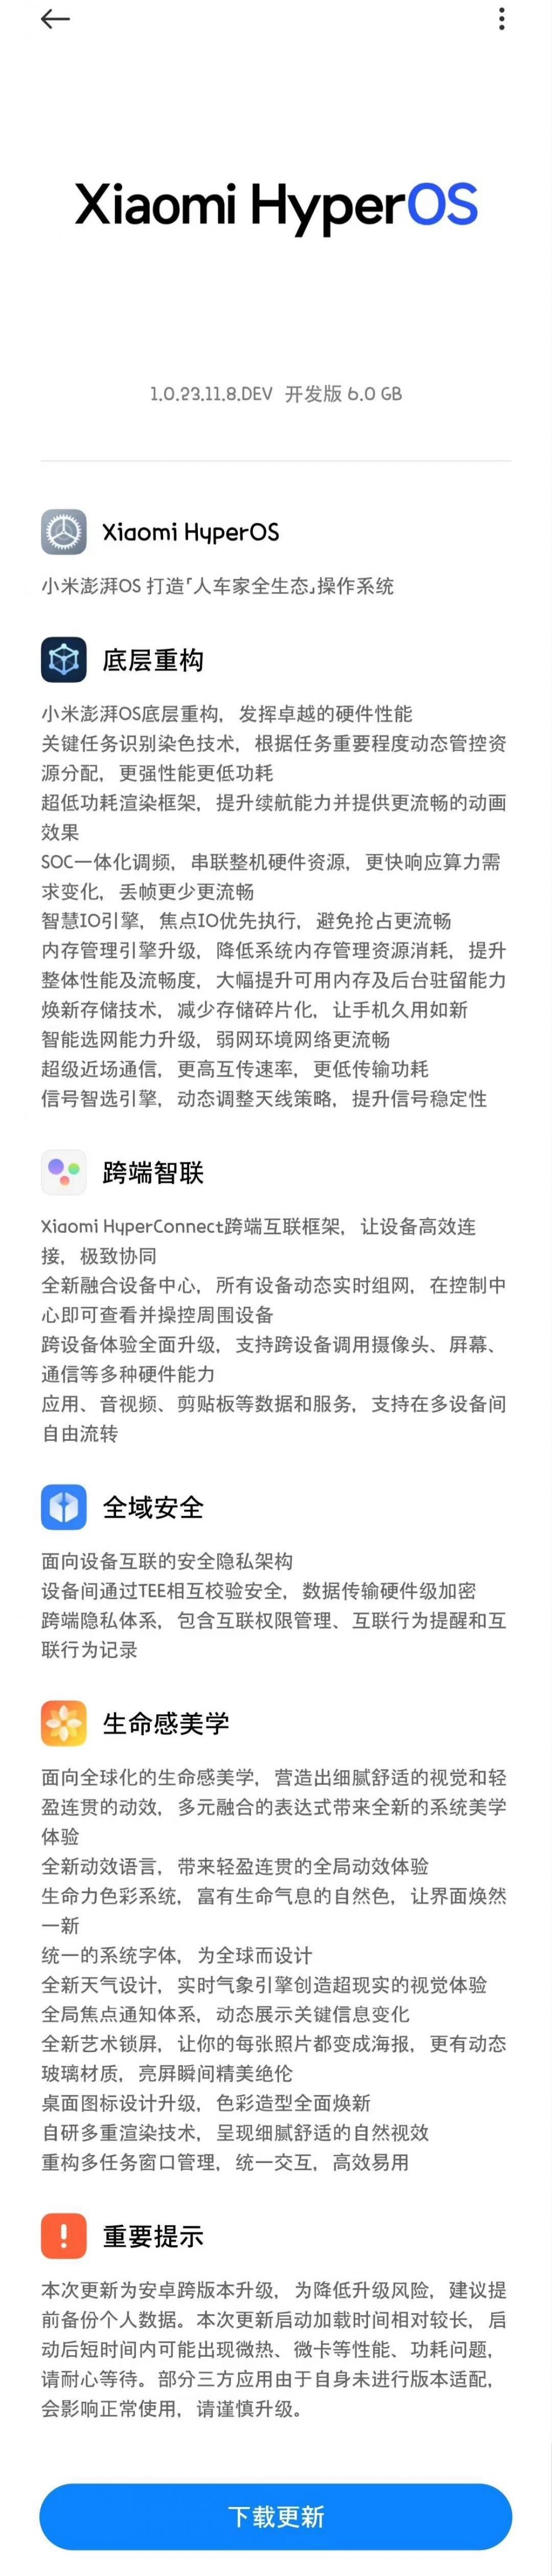 小米澎湃OS首个开发版更新日志公布